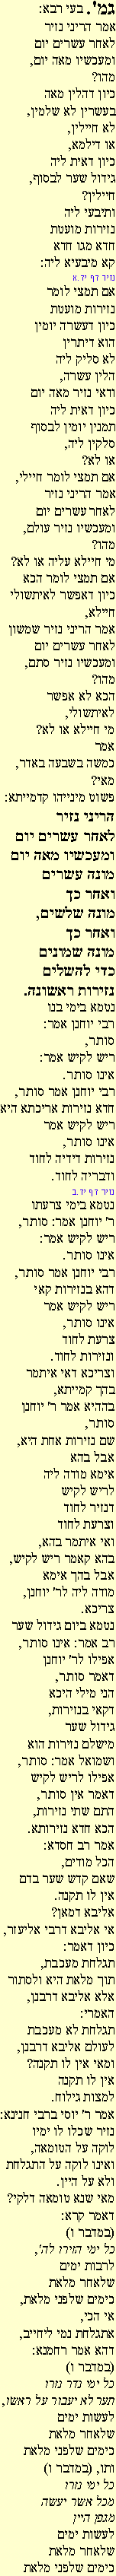 Ghemara 14ab